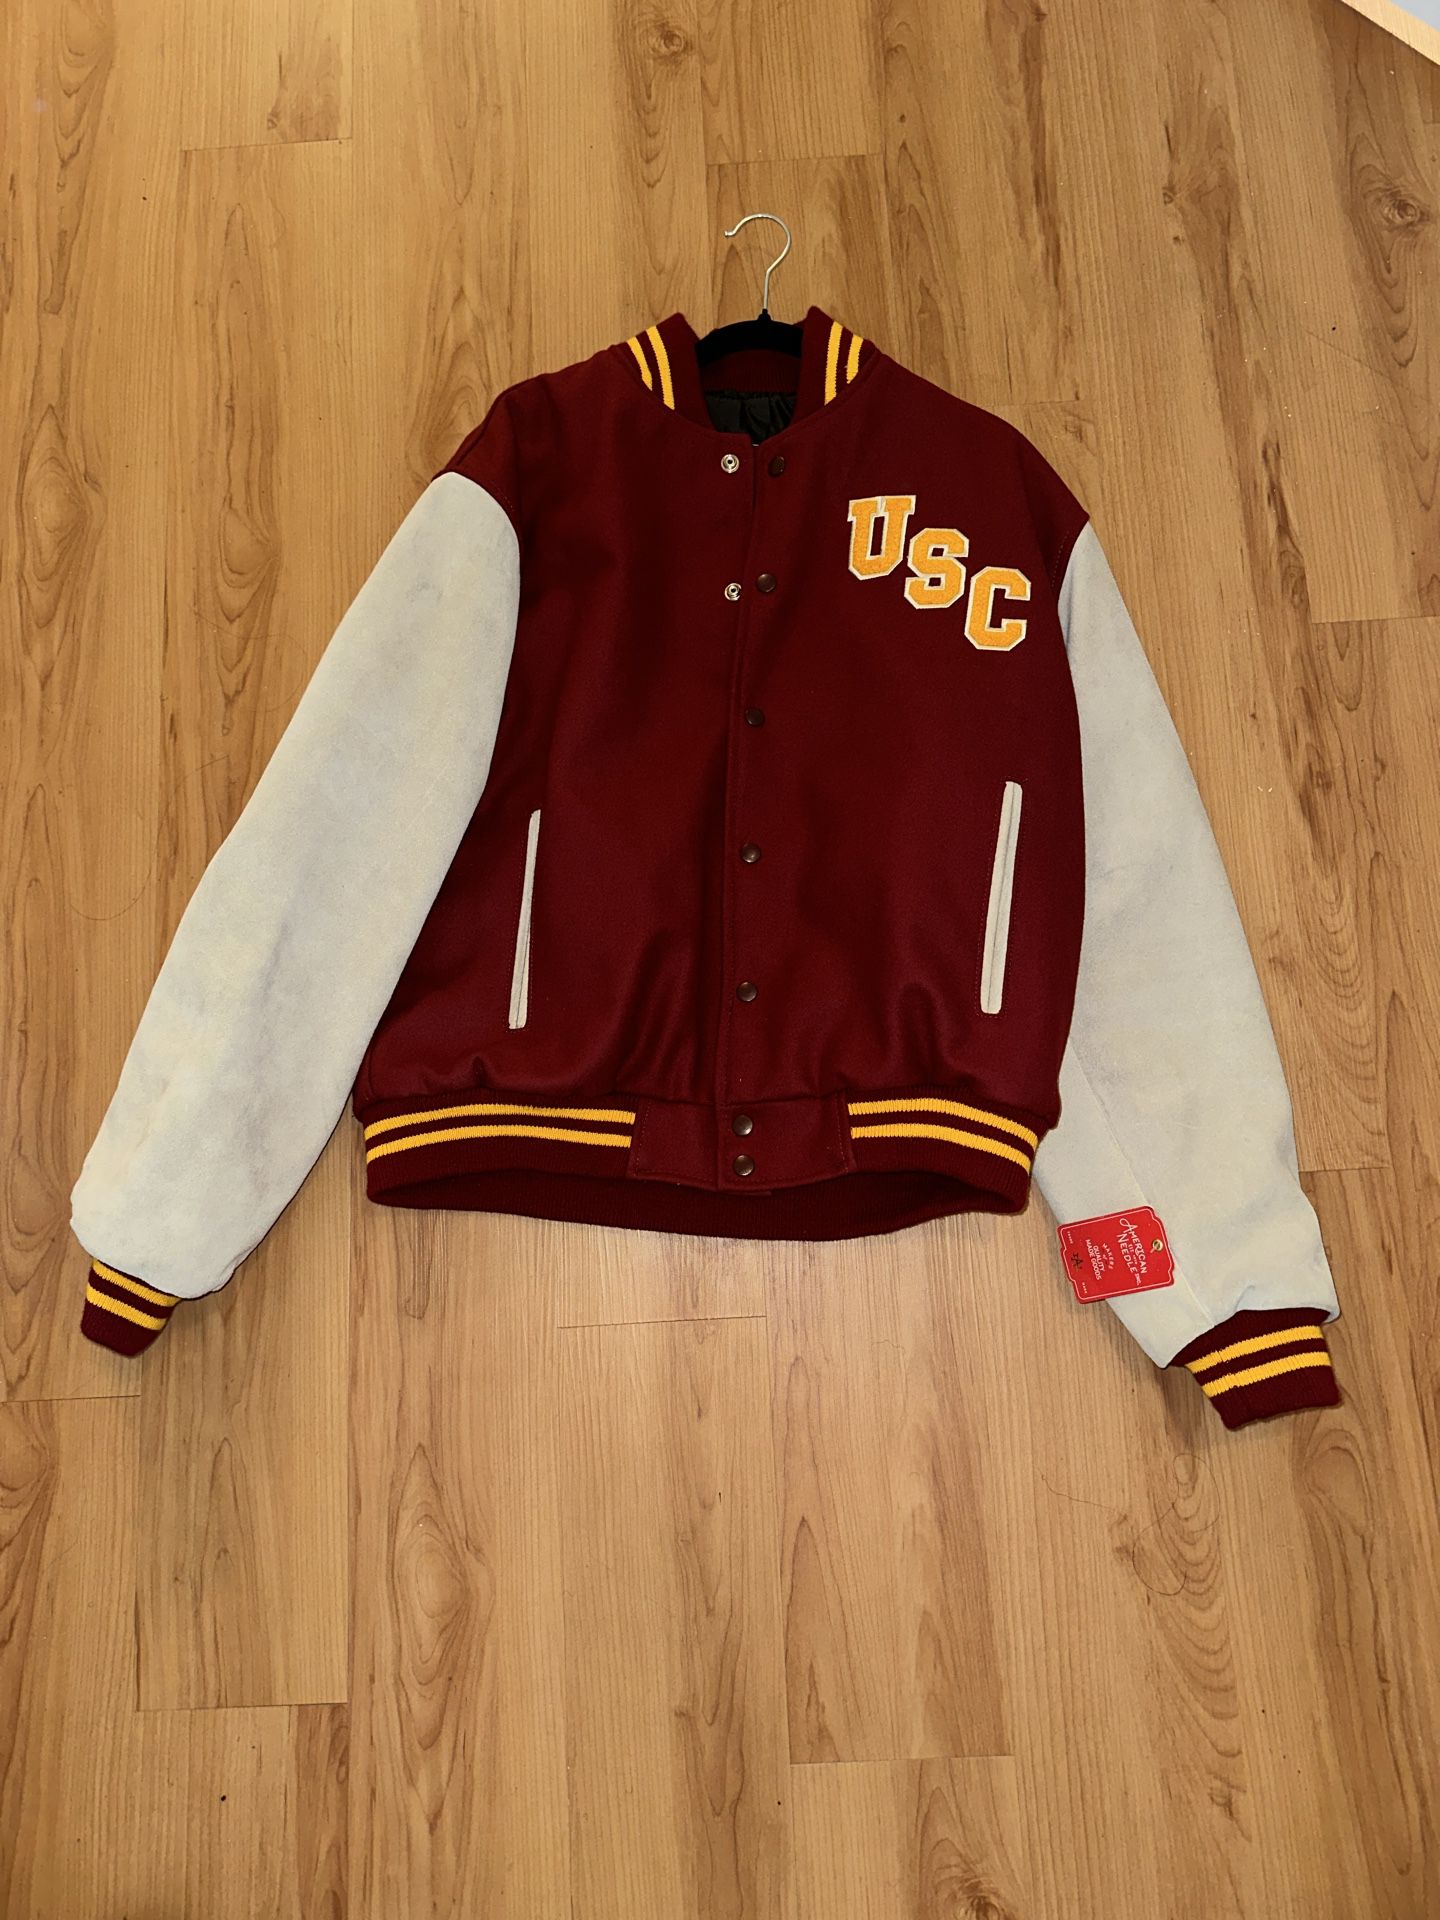 Authentic USC Mens Letterman Jacket